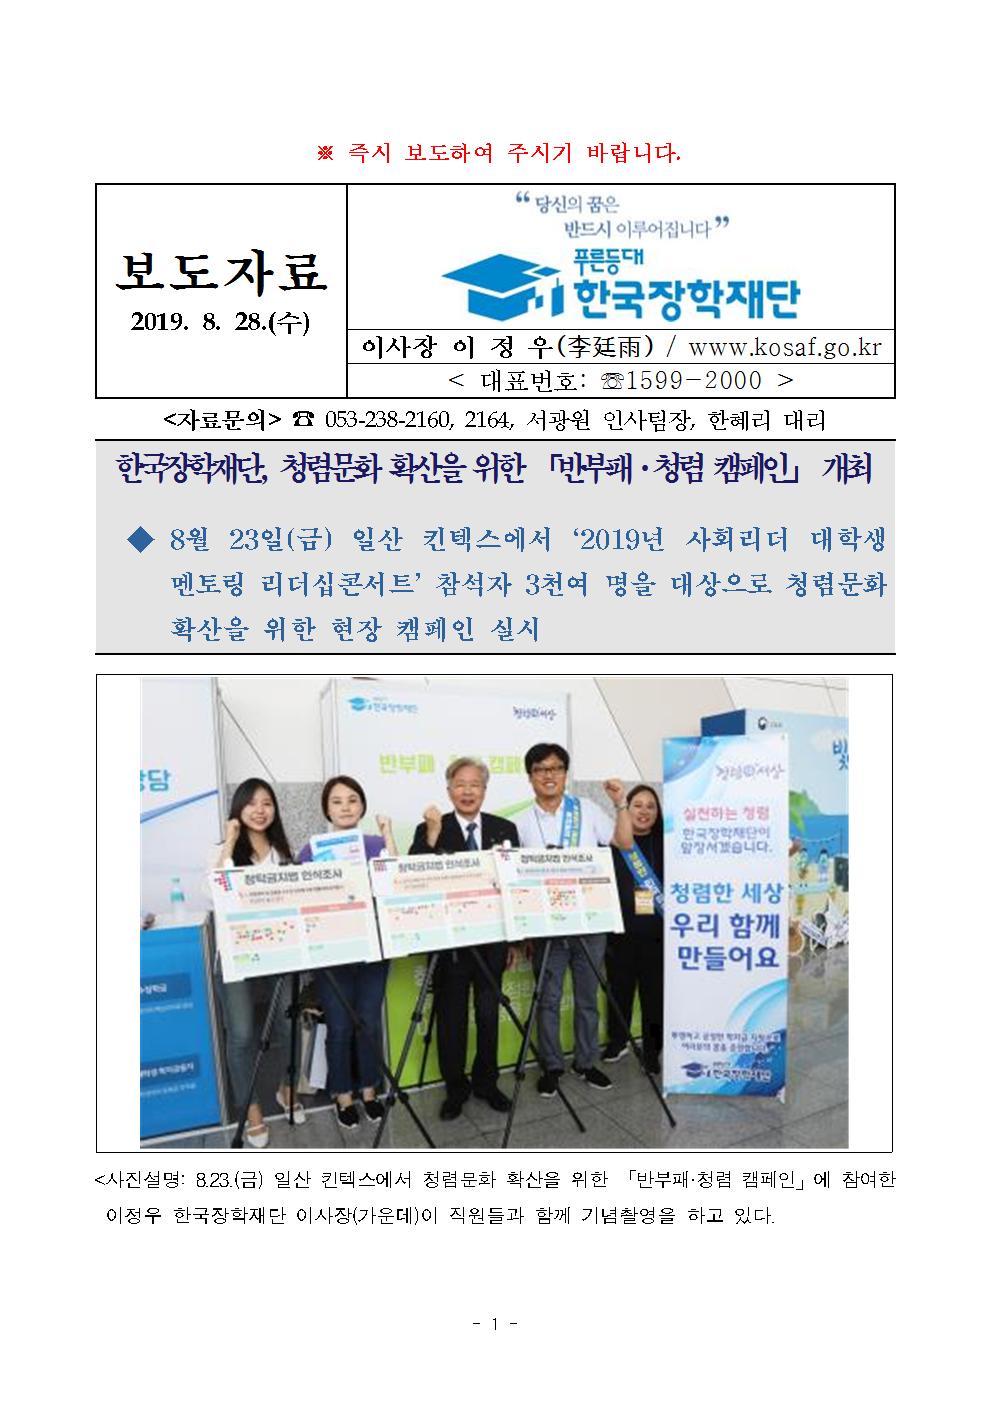 08-28(수)[보도자료] 한국장학재단, 청렴문화 확산을 위한 「반부패 청렴 캠페인」 개최001.jpg